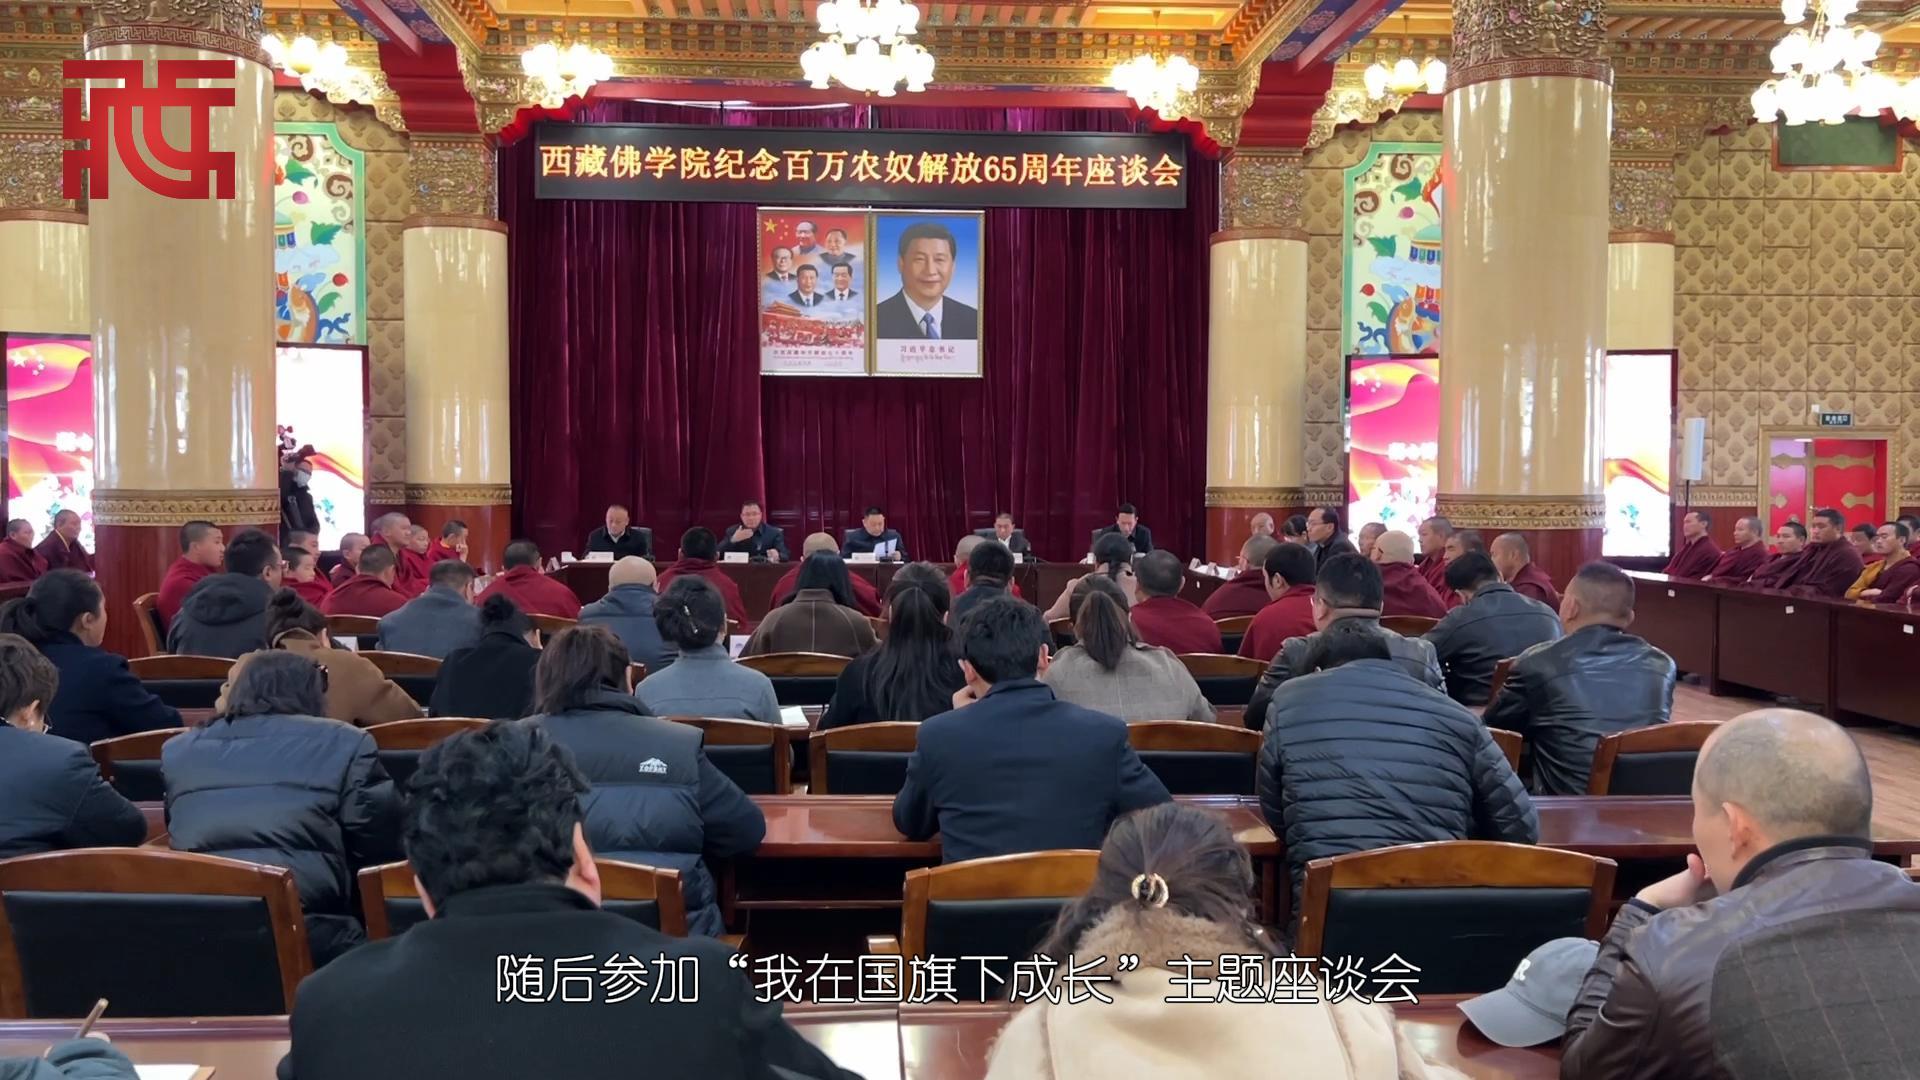 西藏佛学院纪念百万农奴解放65周年